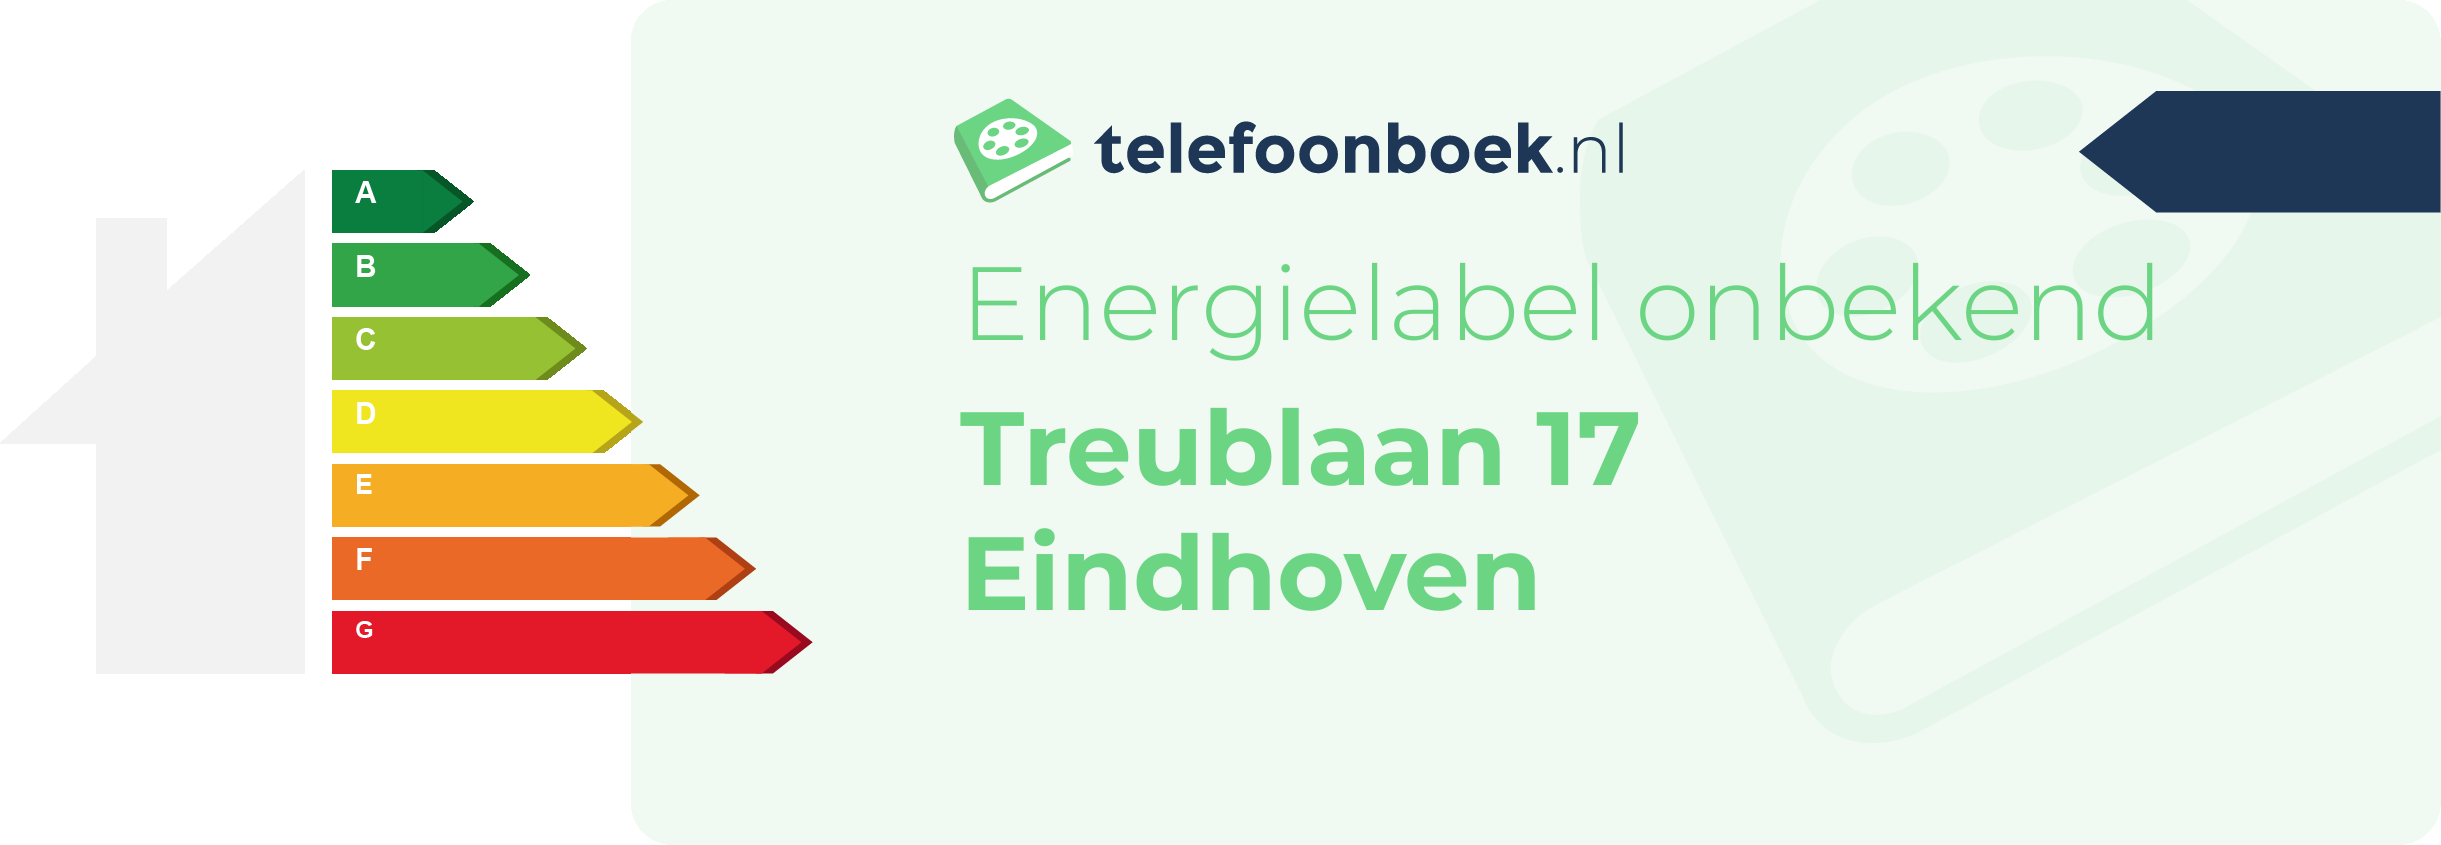 Energielabel Treublaan 17 Eindhoven